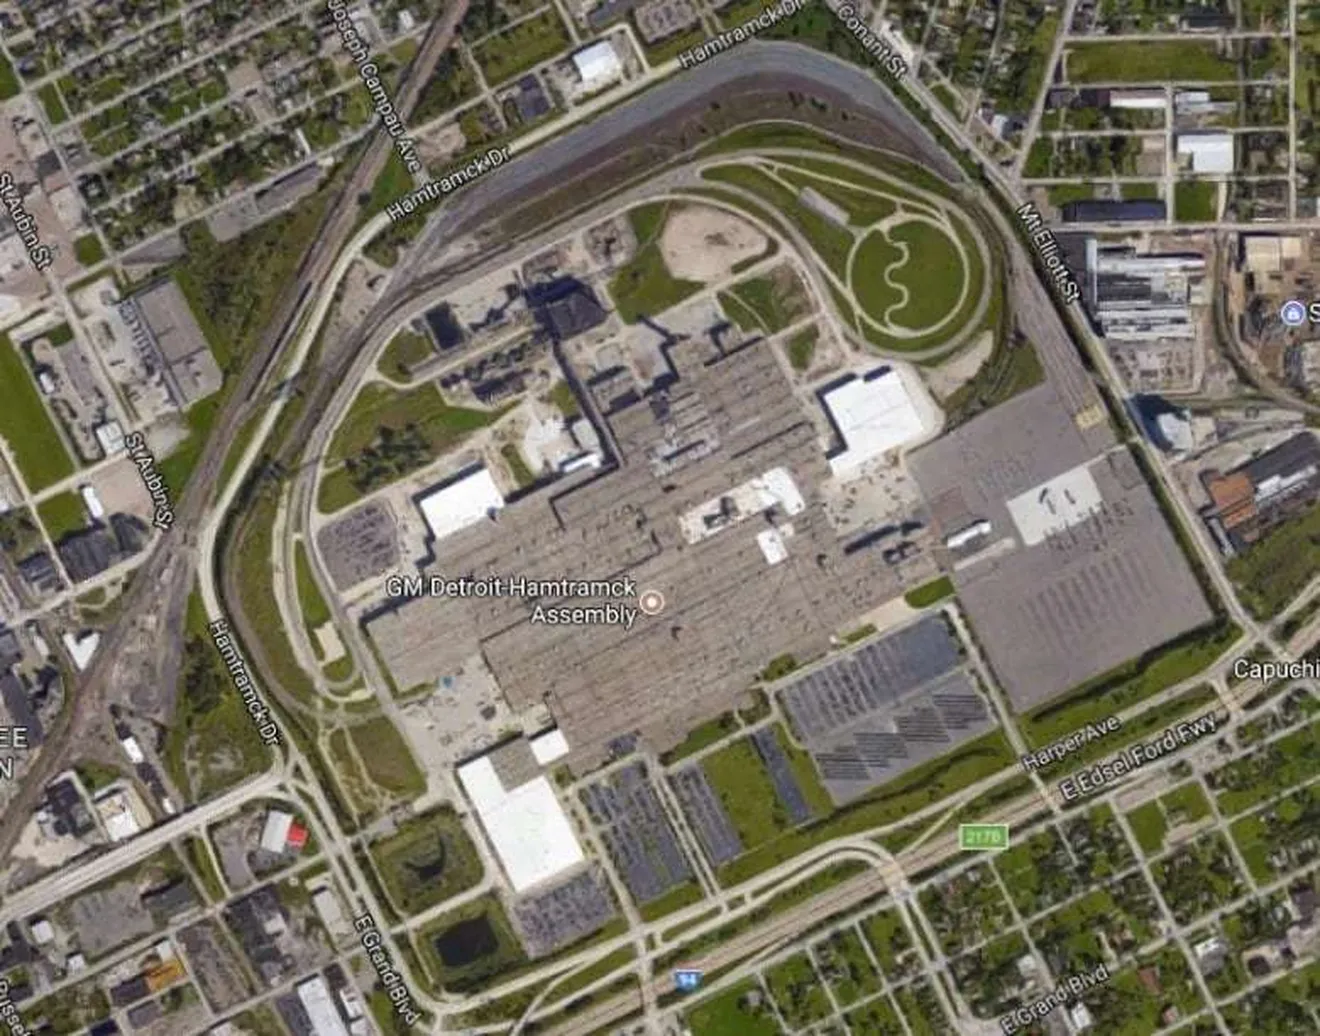 General Motors cerrará 5 factorías y despedirá a unos 14.000 trabajadores